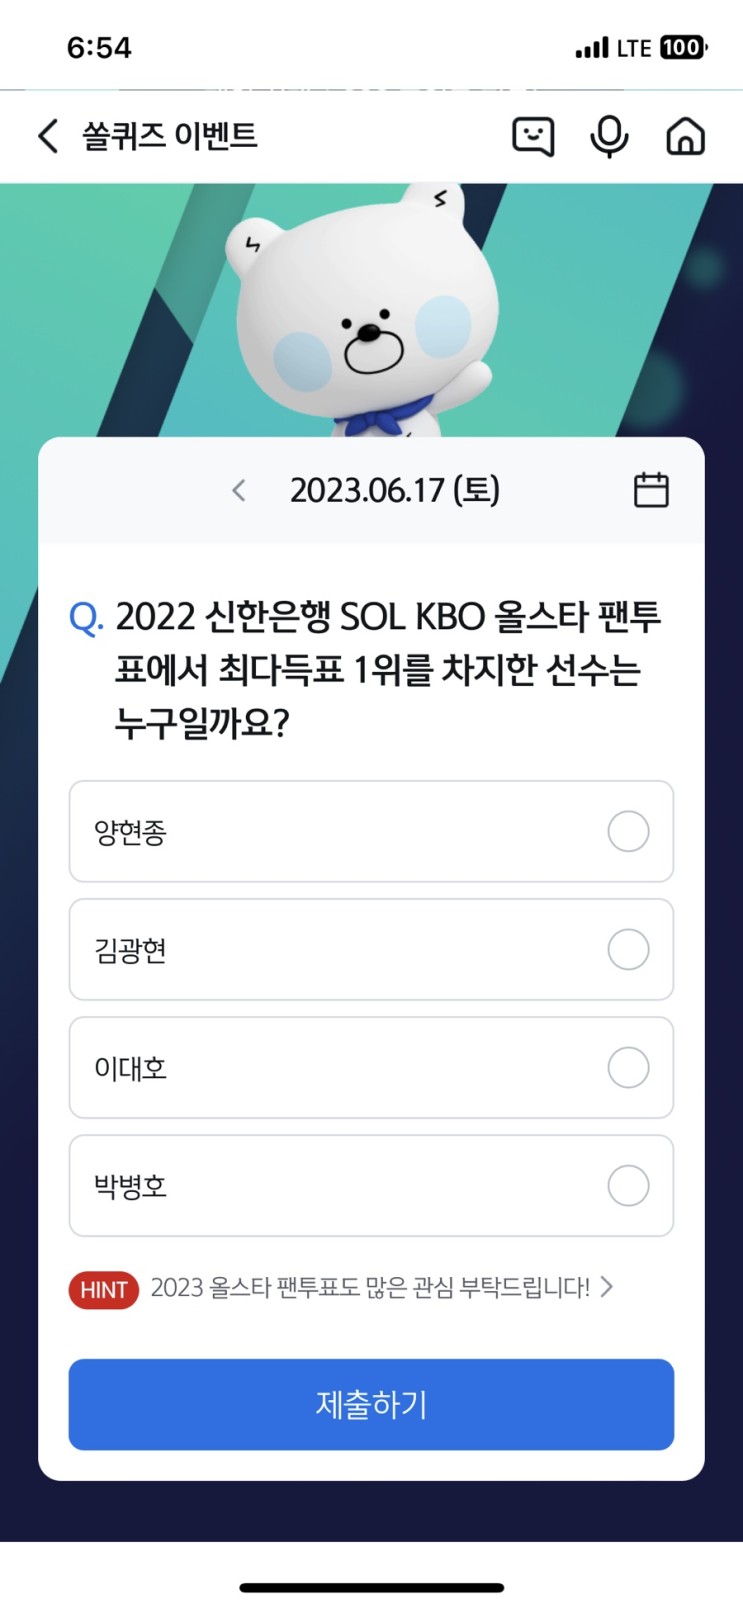 신한 쏠퀴즈(쏠야구) 6월17일 정답 - 2022 신한은행 SOL KBO 올스타 팬투표에서 최다득표 1위를 차지한 선수는 누구일까요?